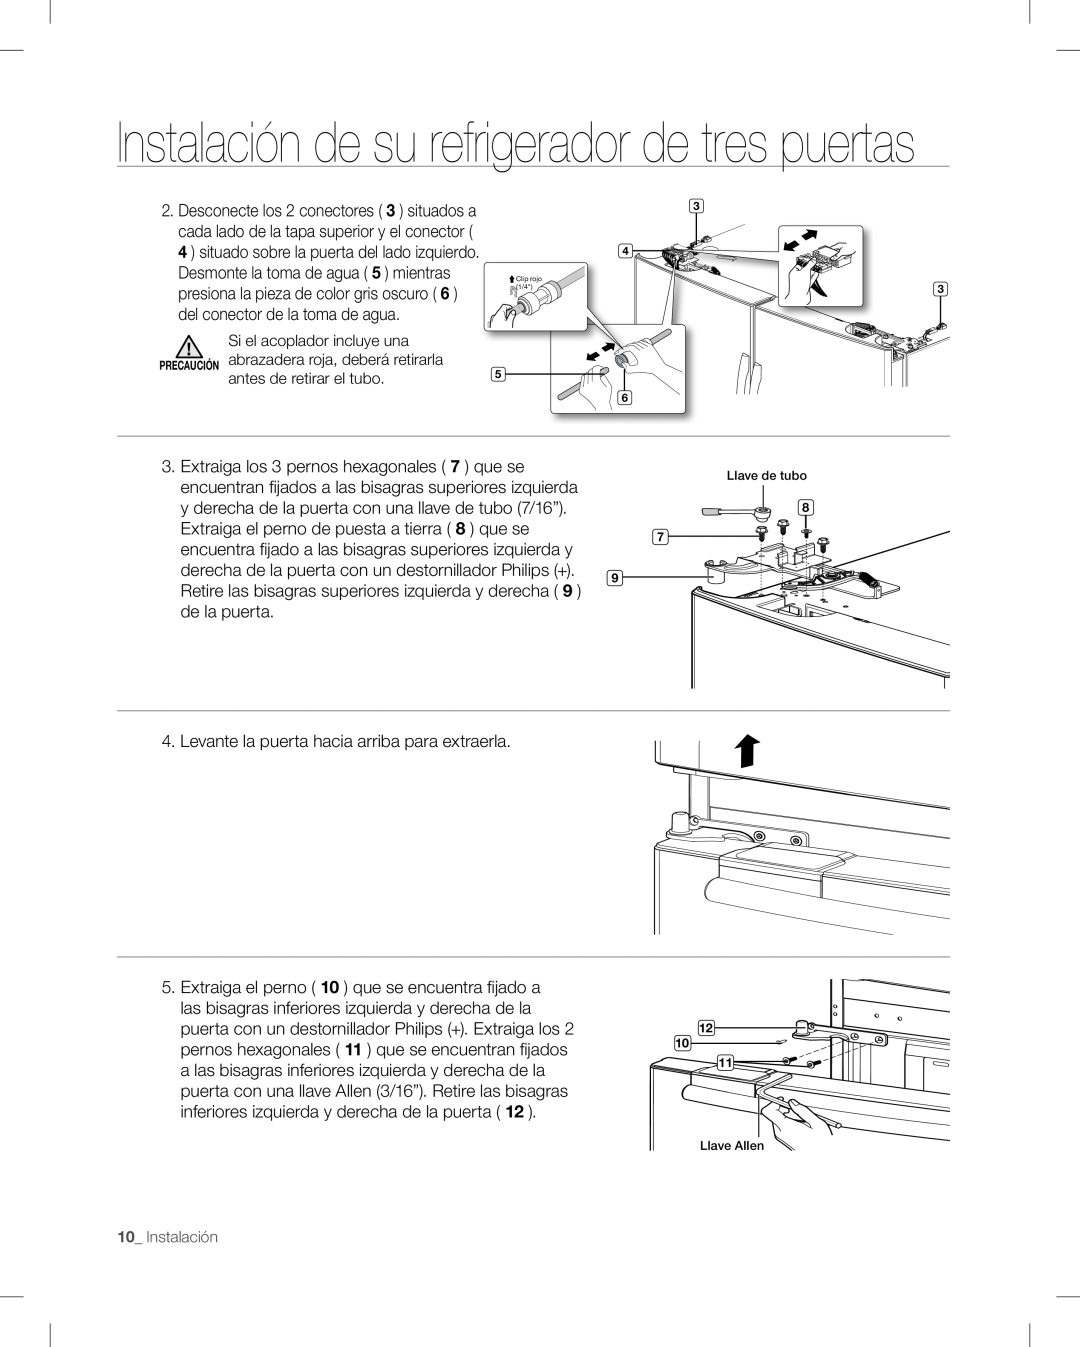 Samsung RF268AB user manual Instalación de su refrigerador de tres puertas, Extraiga el perno de puesta a tierra 8 que se 